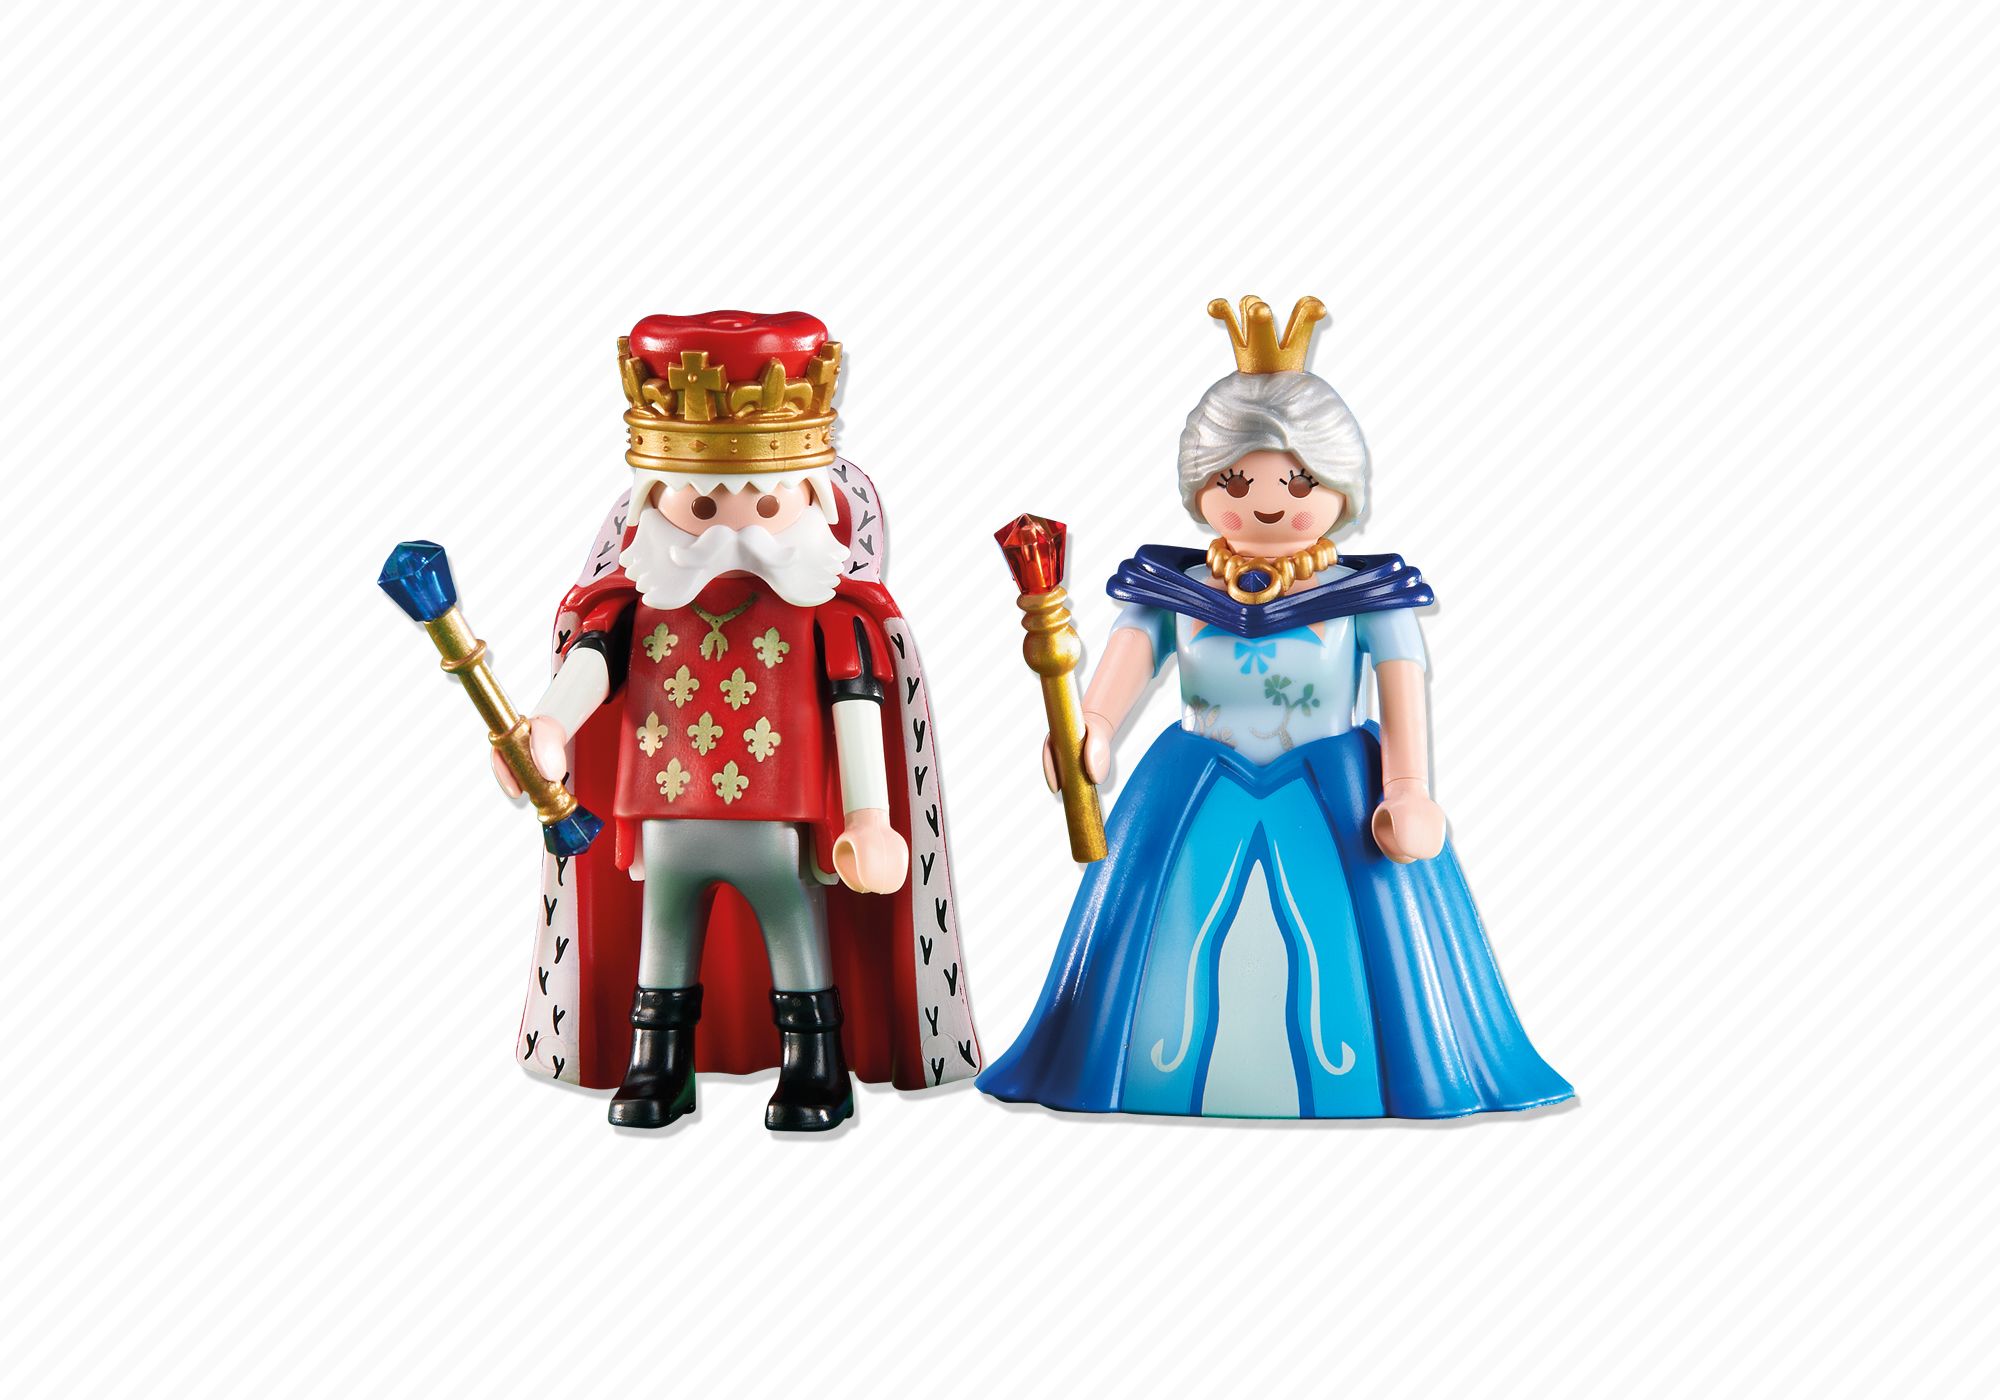 Читать в королева ты моя игрушка. Плеймобил Король. Playmobil фигурка королевы. Игрушка Король. Игрушки Король и Королева.